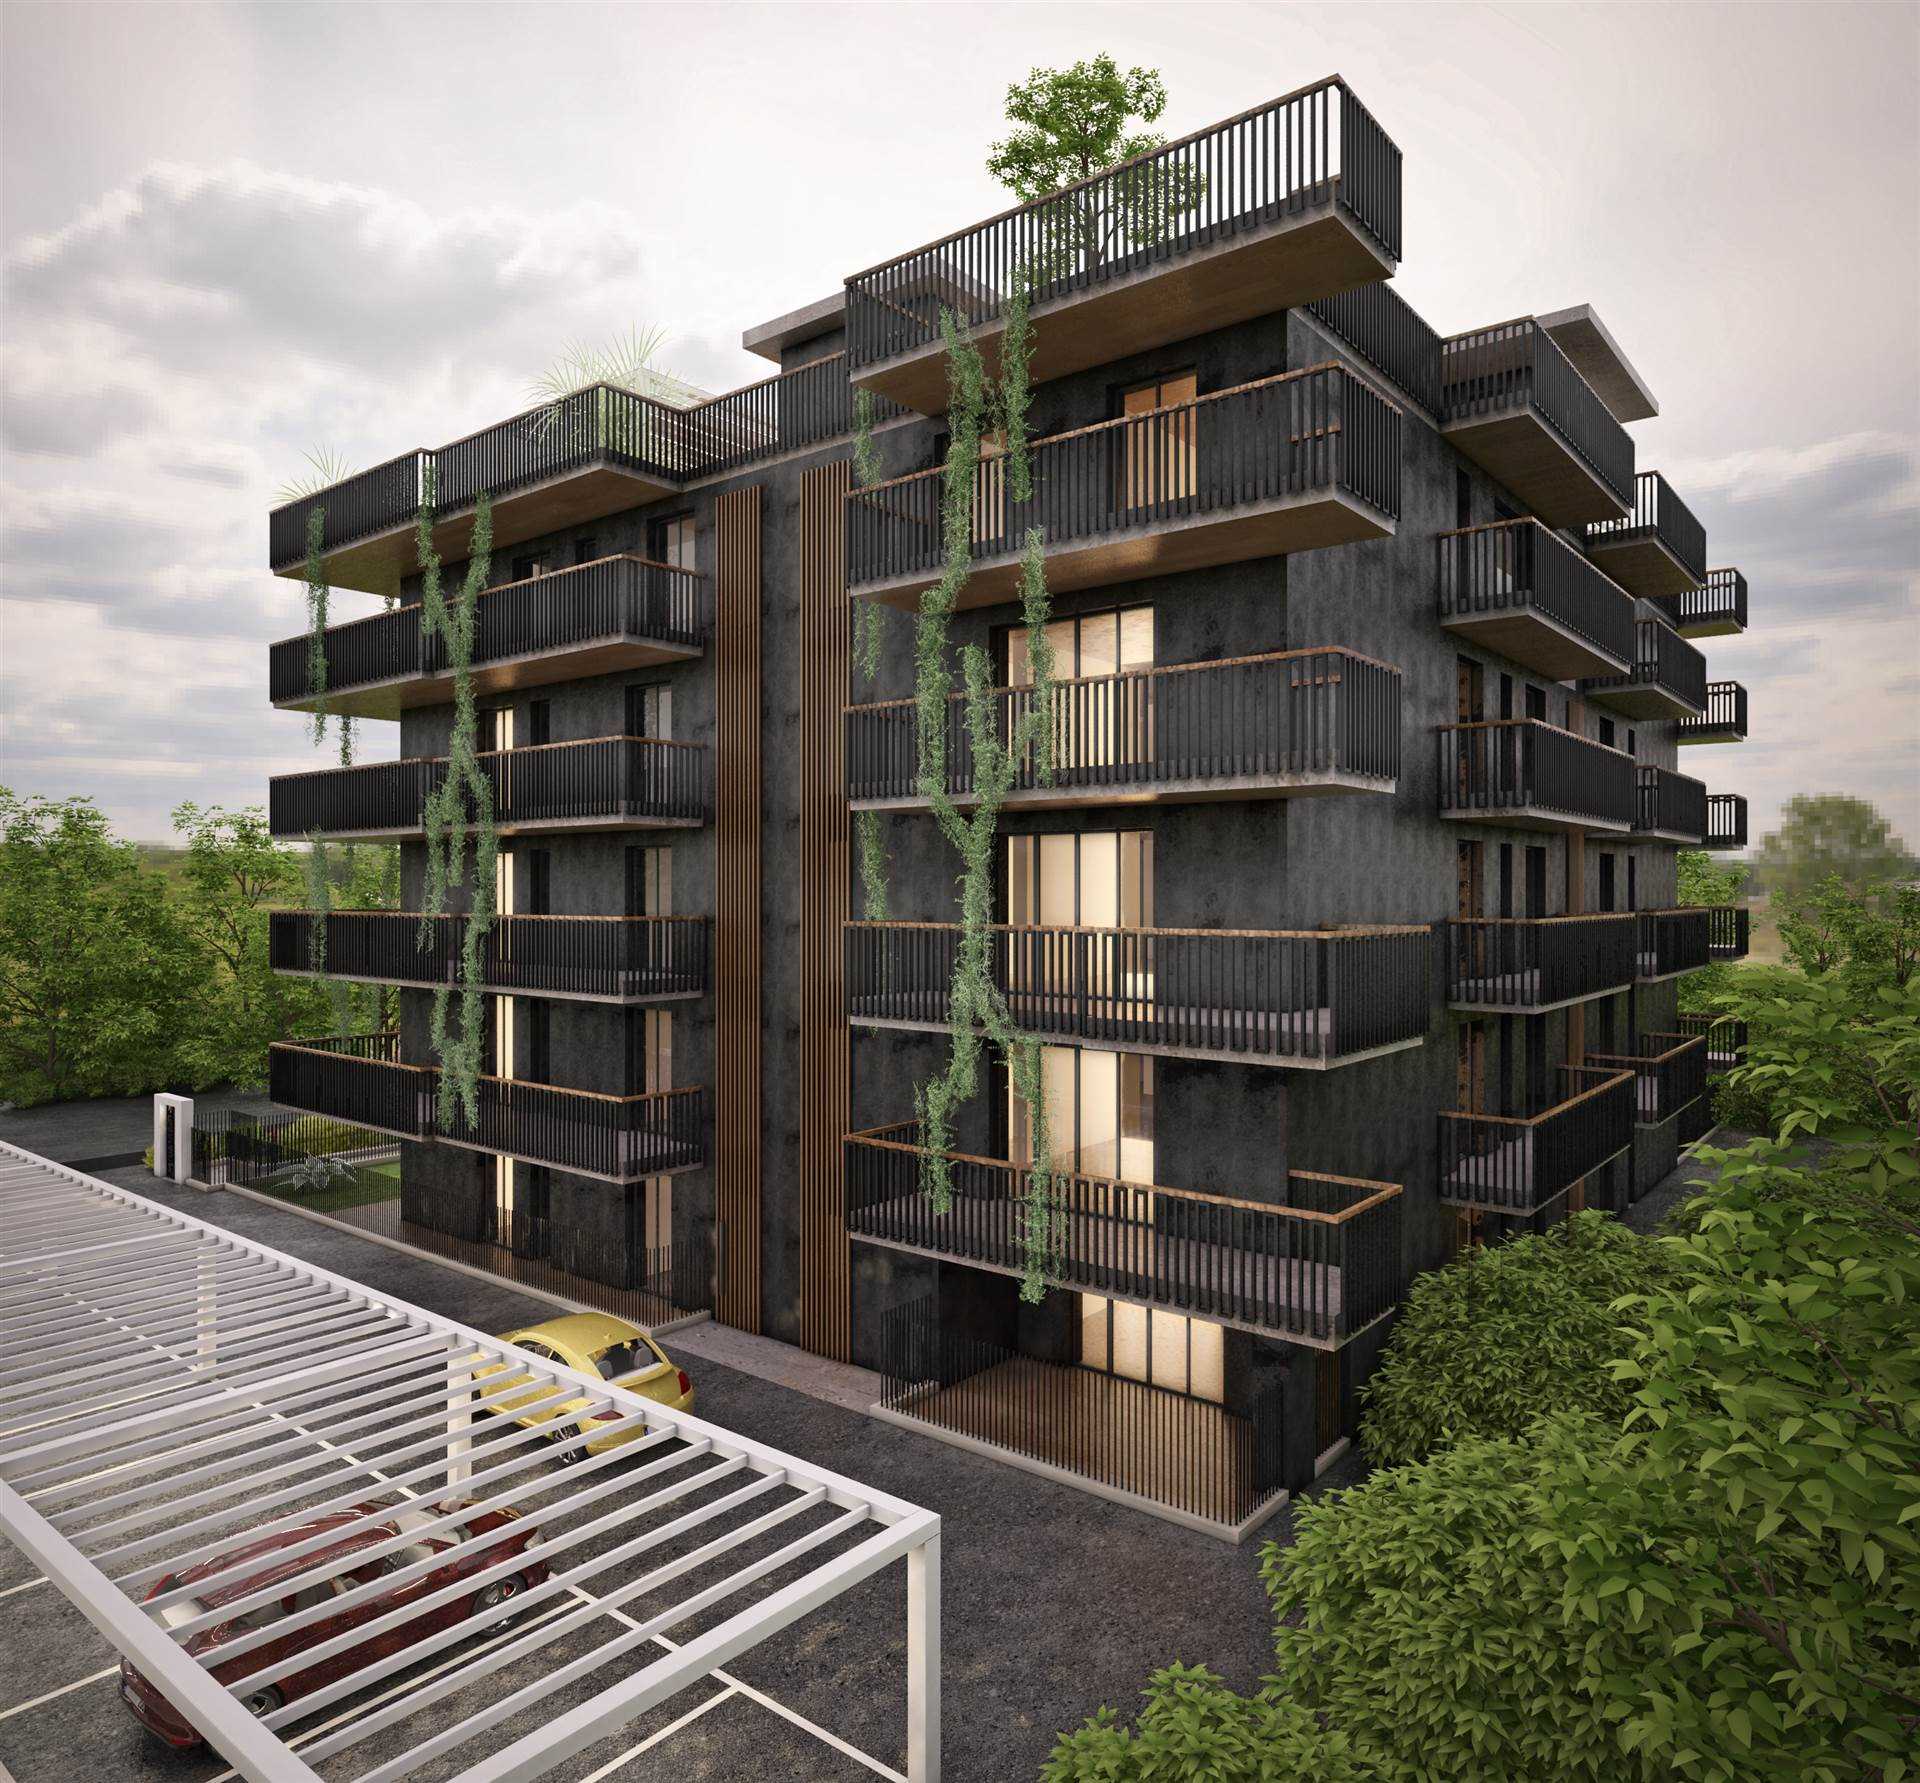 Nuova costruzione in vendita a Salerno, in Via Delle Calabrie 19. L'immobile di 90 mq si trova al primo piano ed è caratterizzato dalla classe 